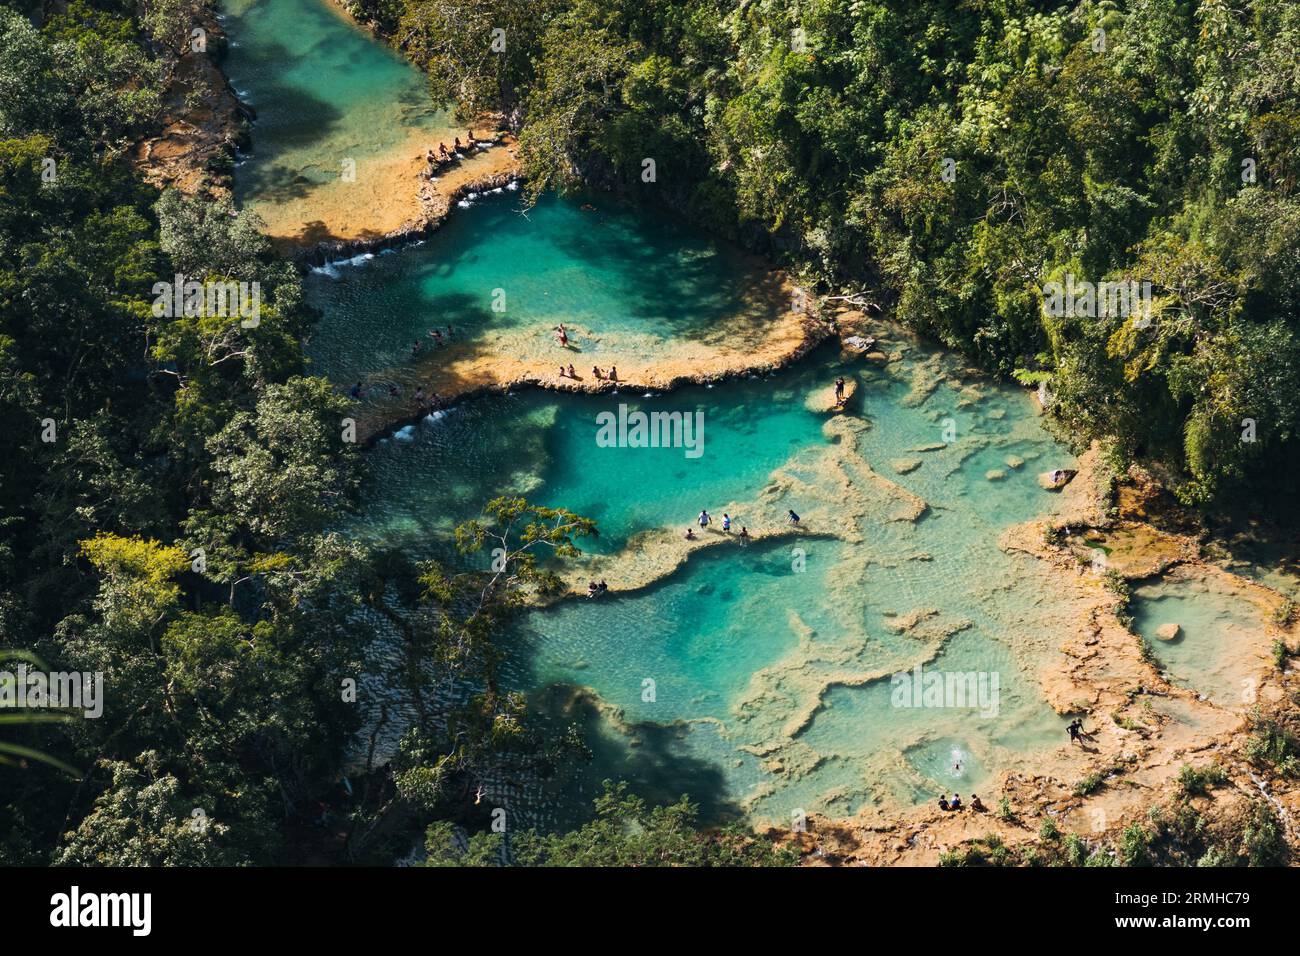 Les touristes nagent et profitent des piscines turquoise sur la rivière Cahabón dans le Monument naturel de Semuc Champey, Guatemala Banque D'Images